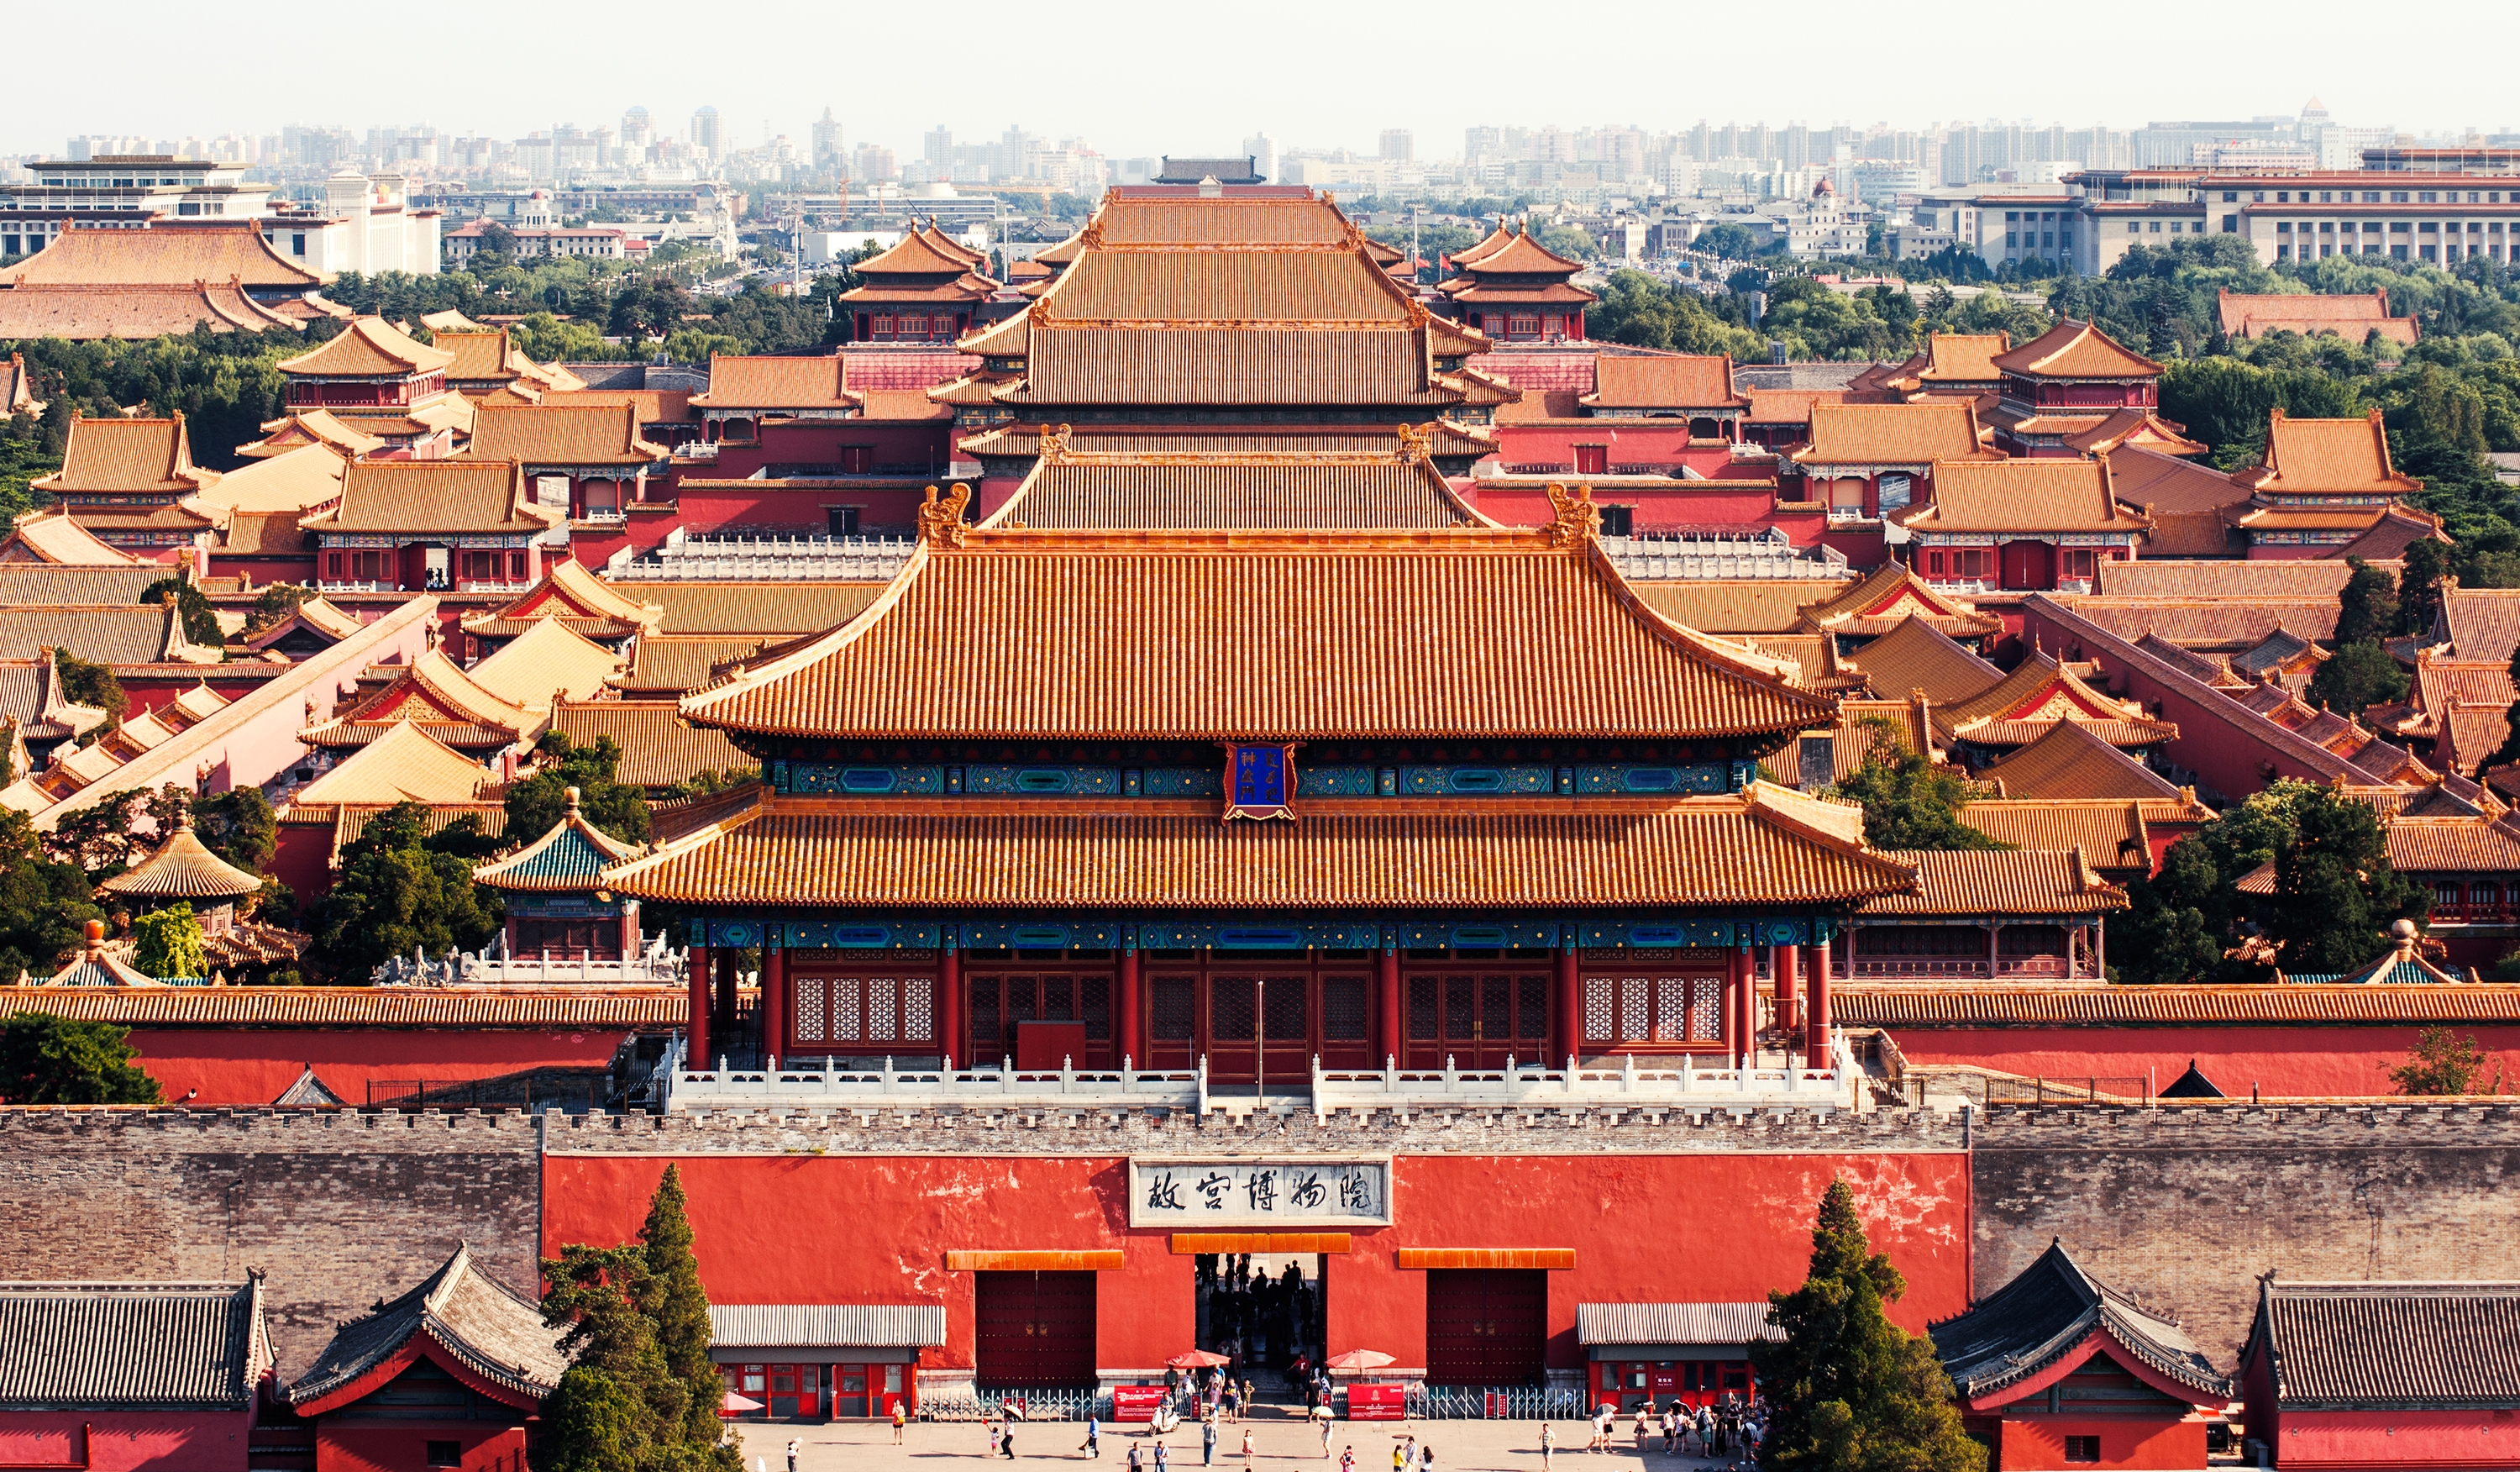 Le Top 5 des villes touristiques en Chine